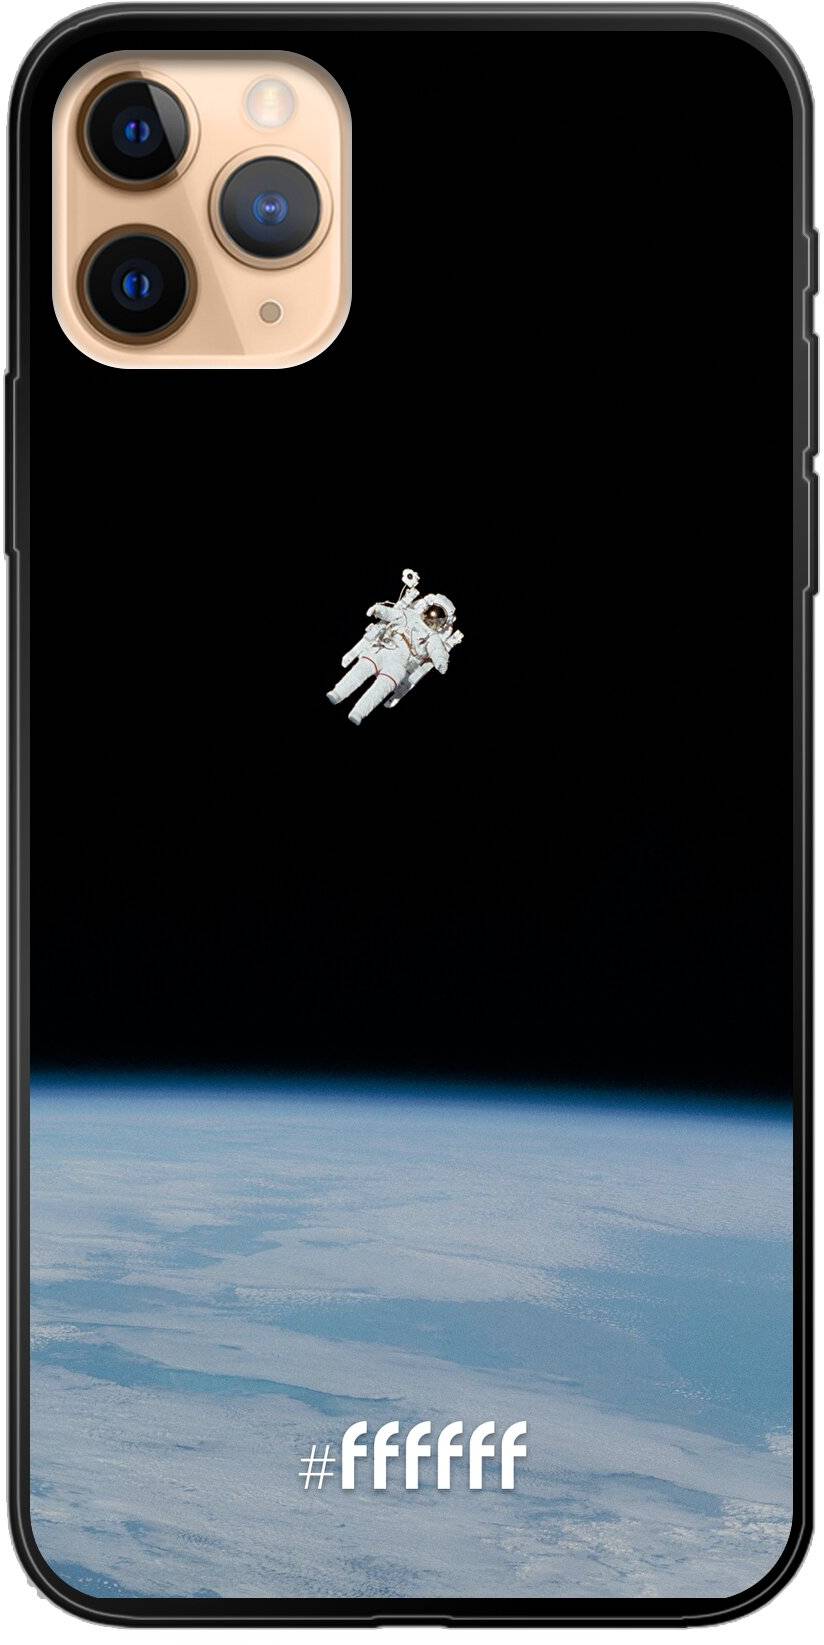 Spacewalk iPhone 11 Pro Max